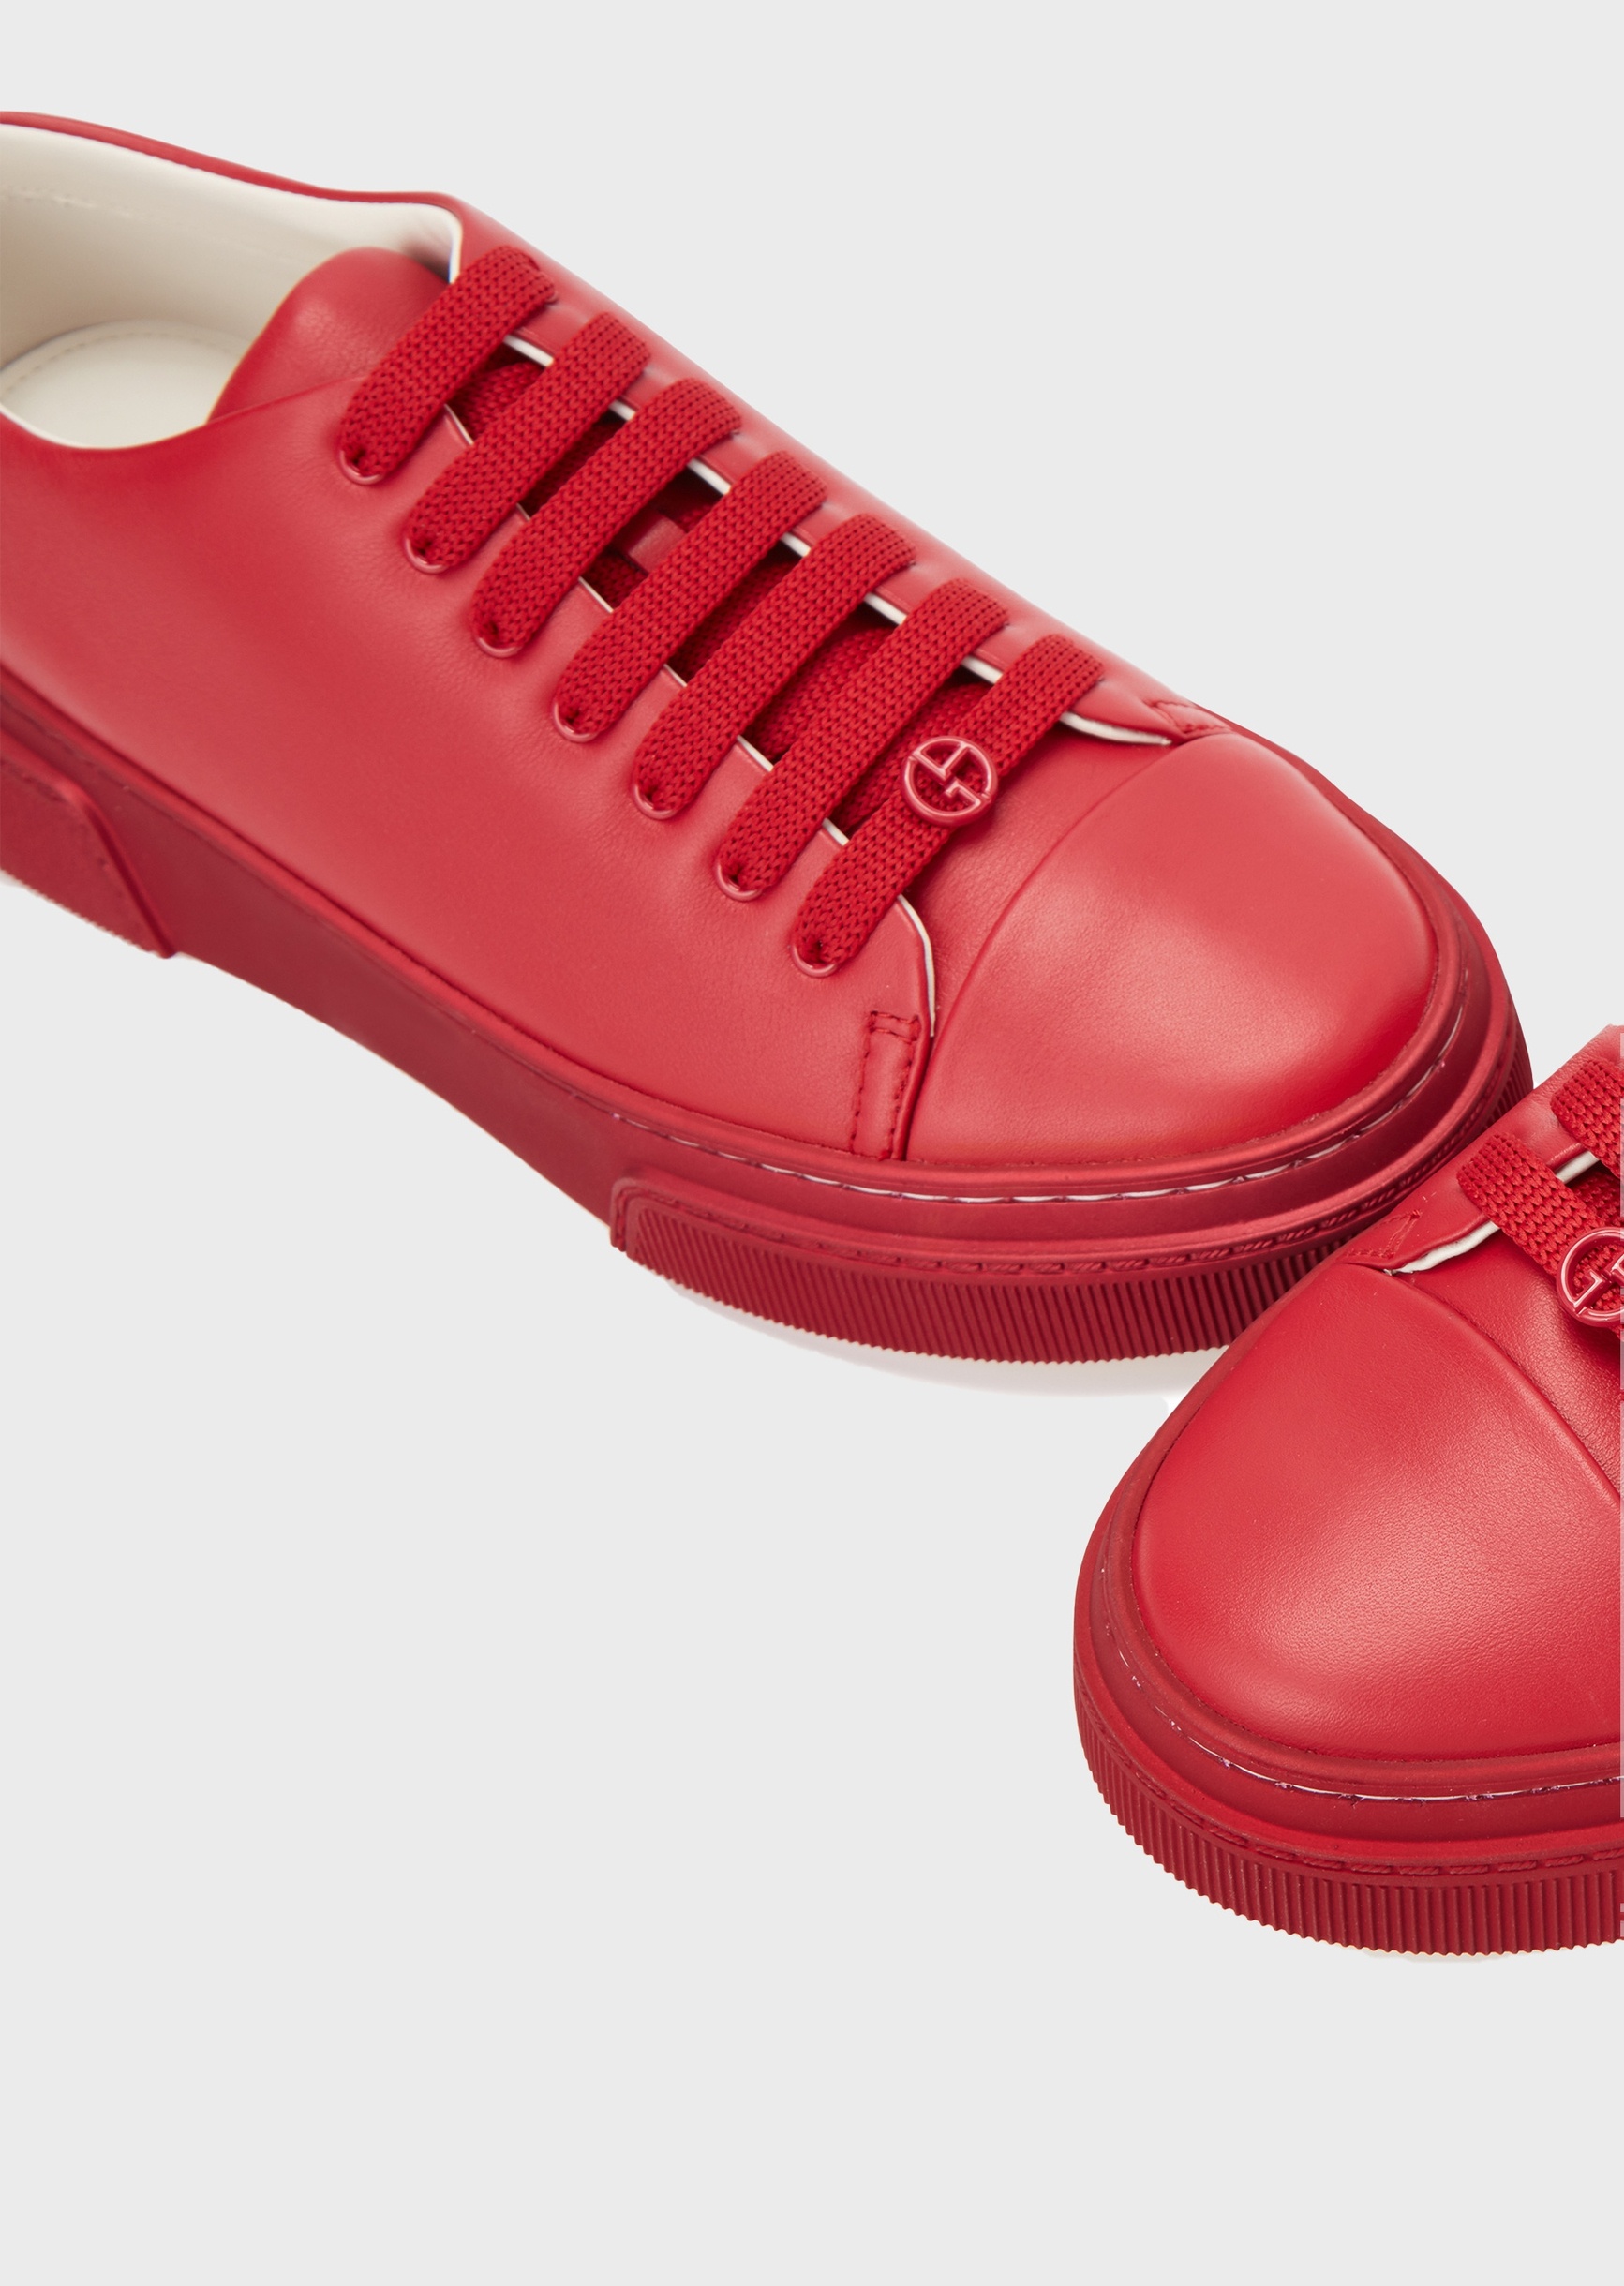 Giorgio Armani 皮革时尚休闲鞋